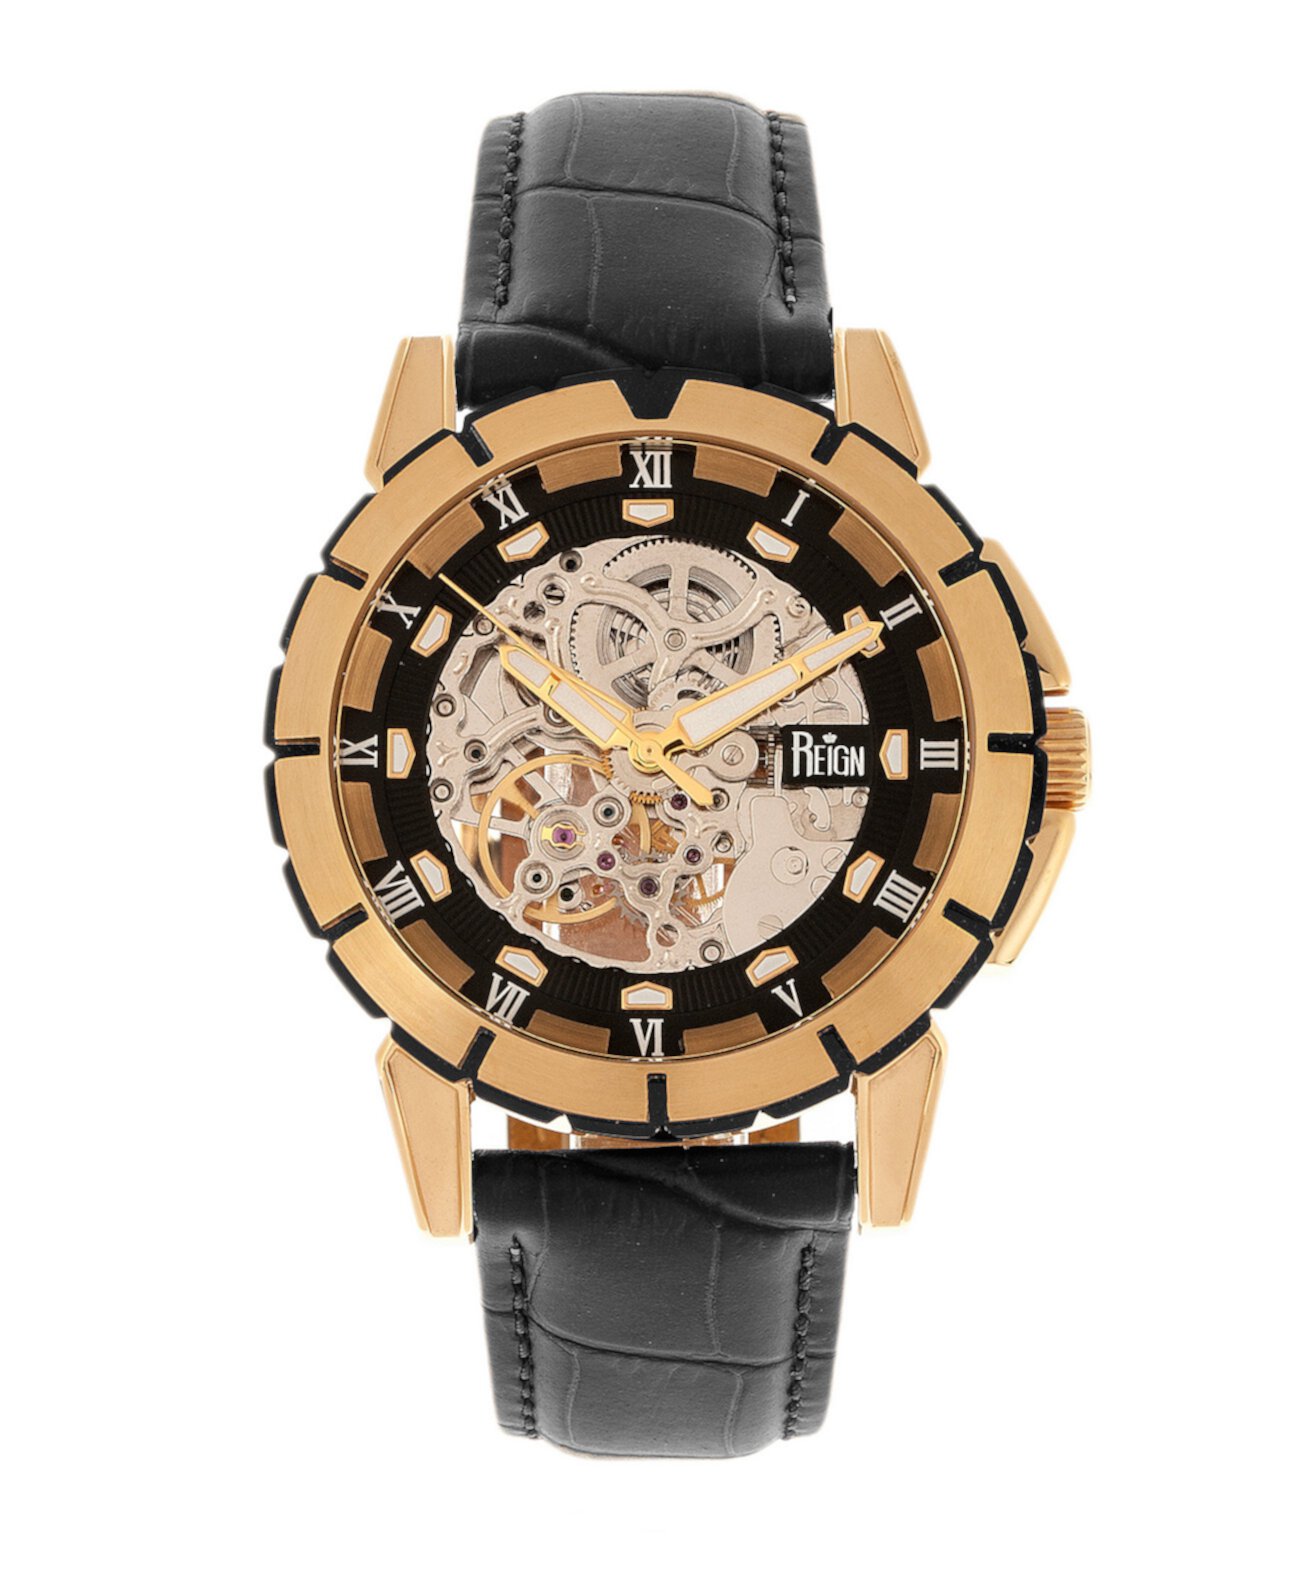 Philippe Автоматический корпус из розового золота, черный циферблат, часы из натуральной черной кожи 41 мм Reign